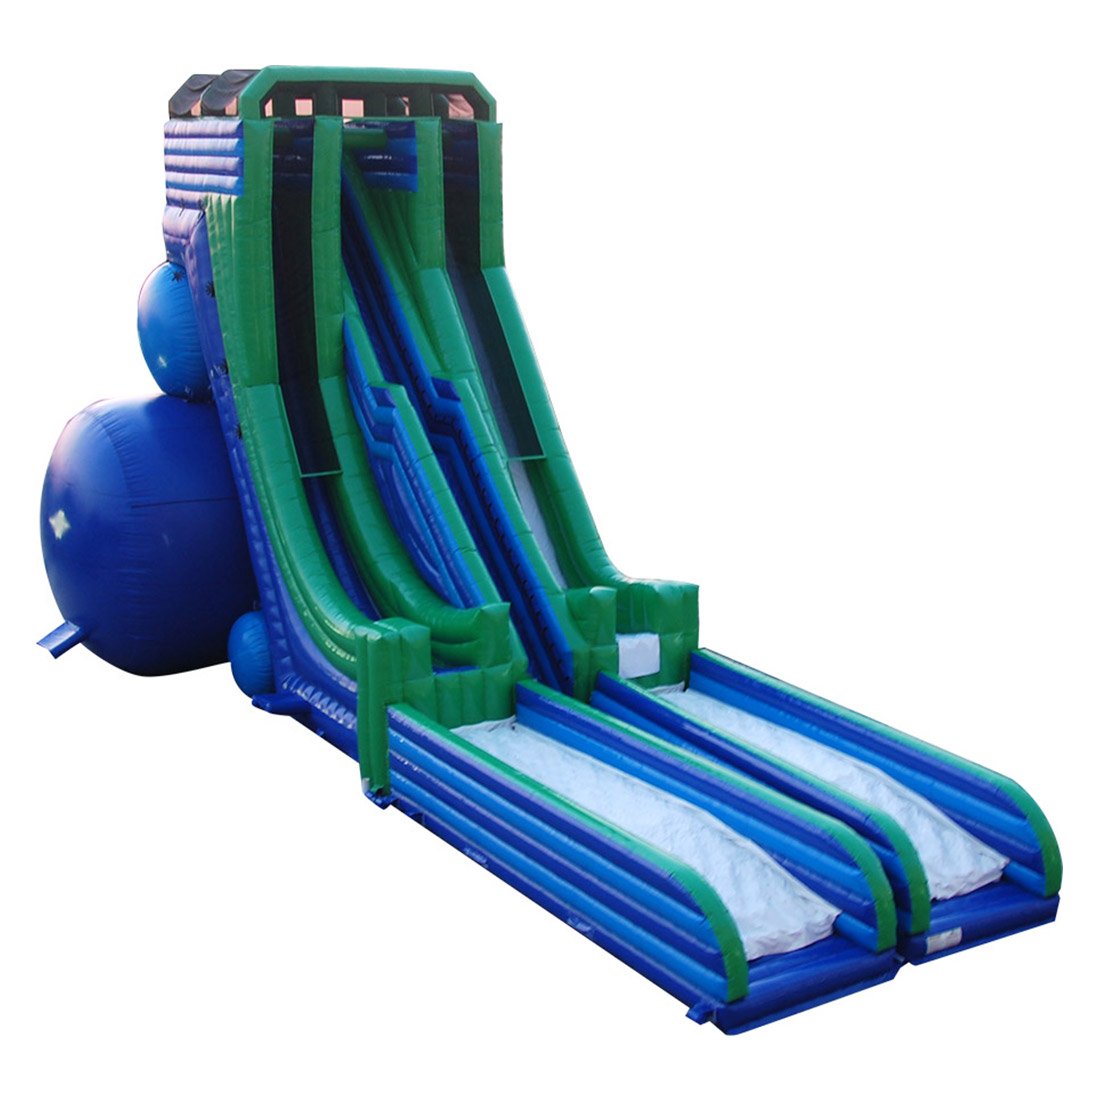 Sky Slide Used - SALE - i2k Inflatable